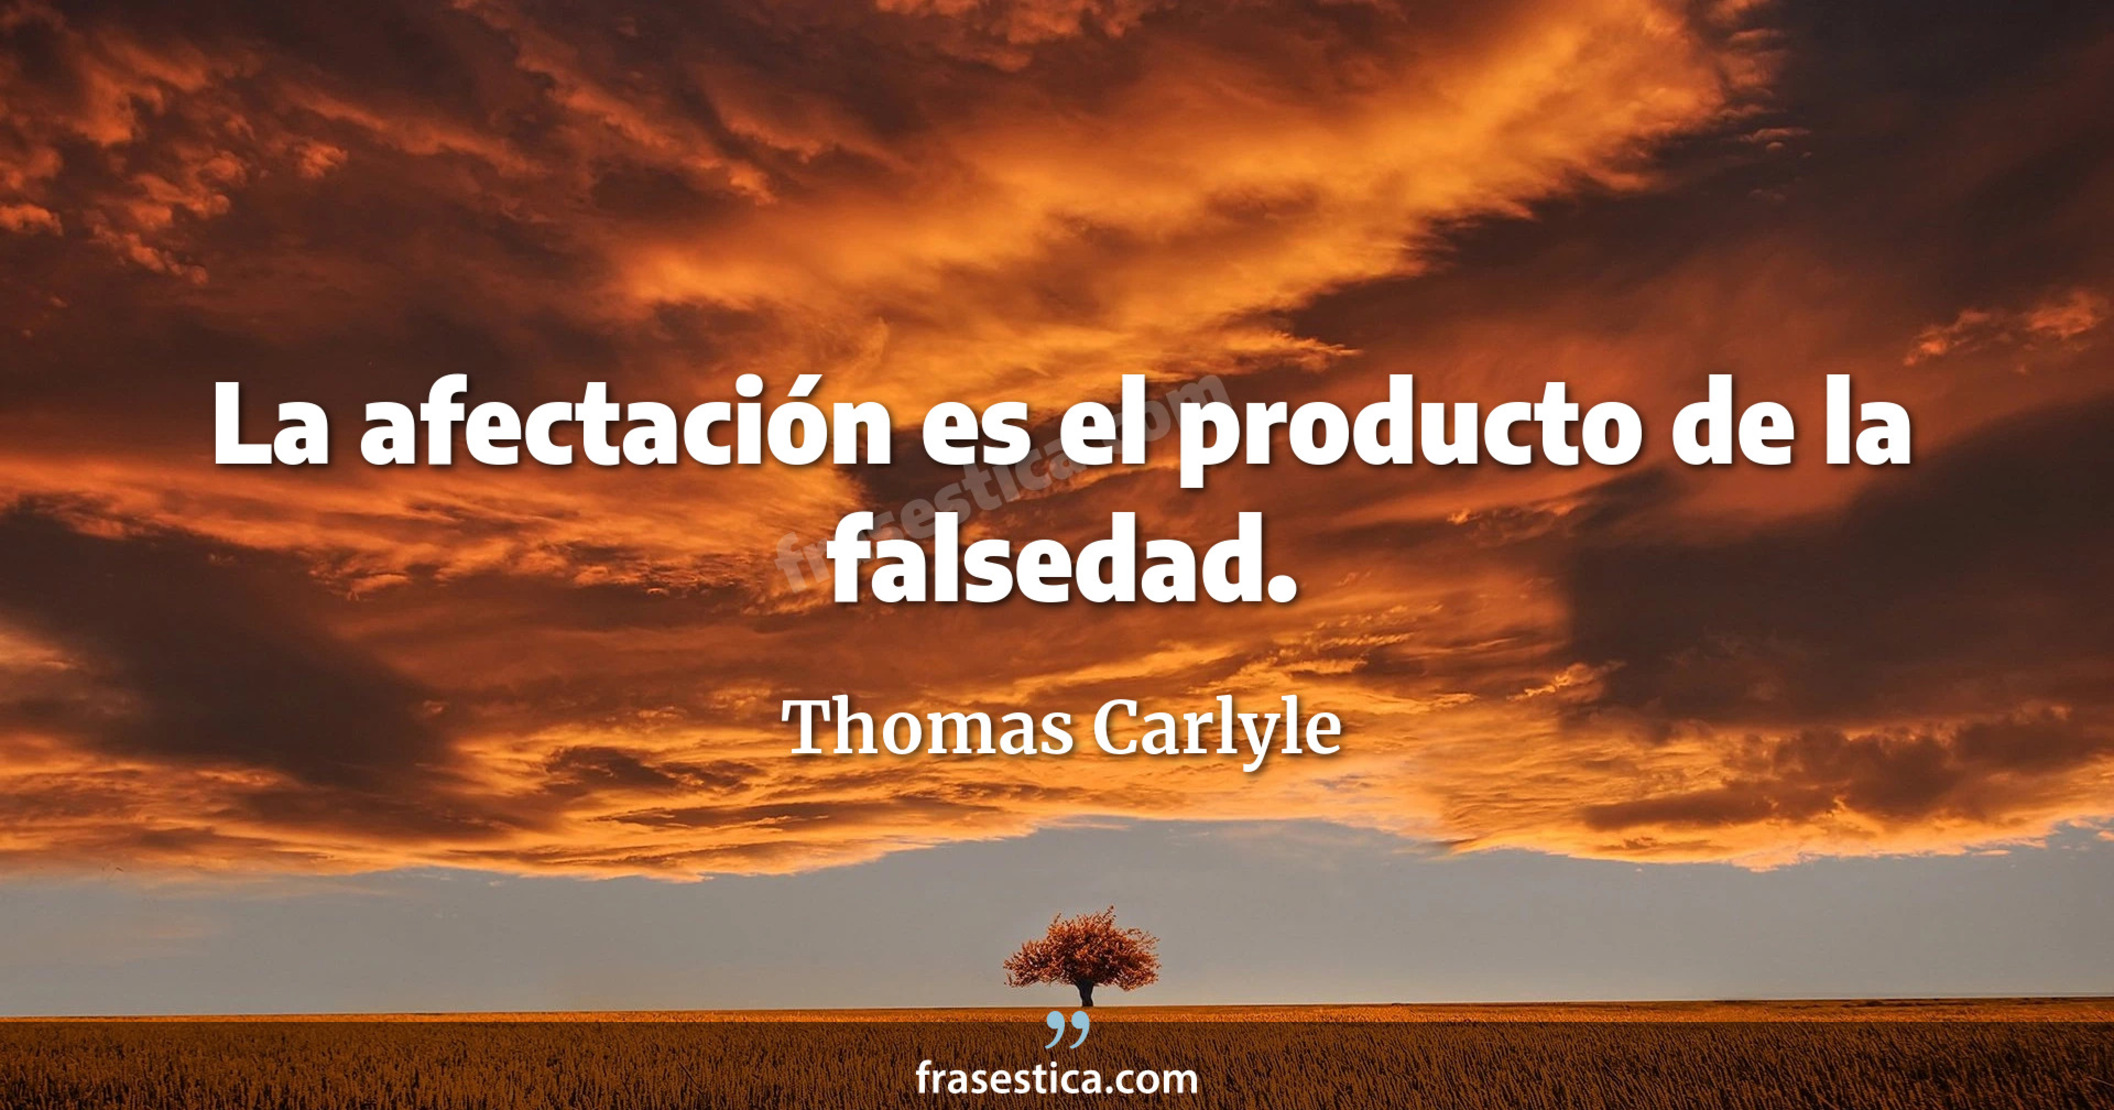 La afectación es el producto de la falsedad. - Thomas Carlyle